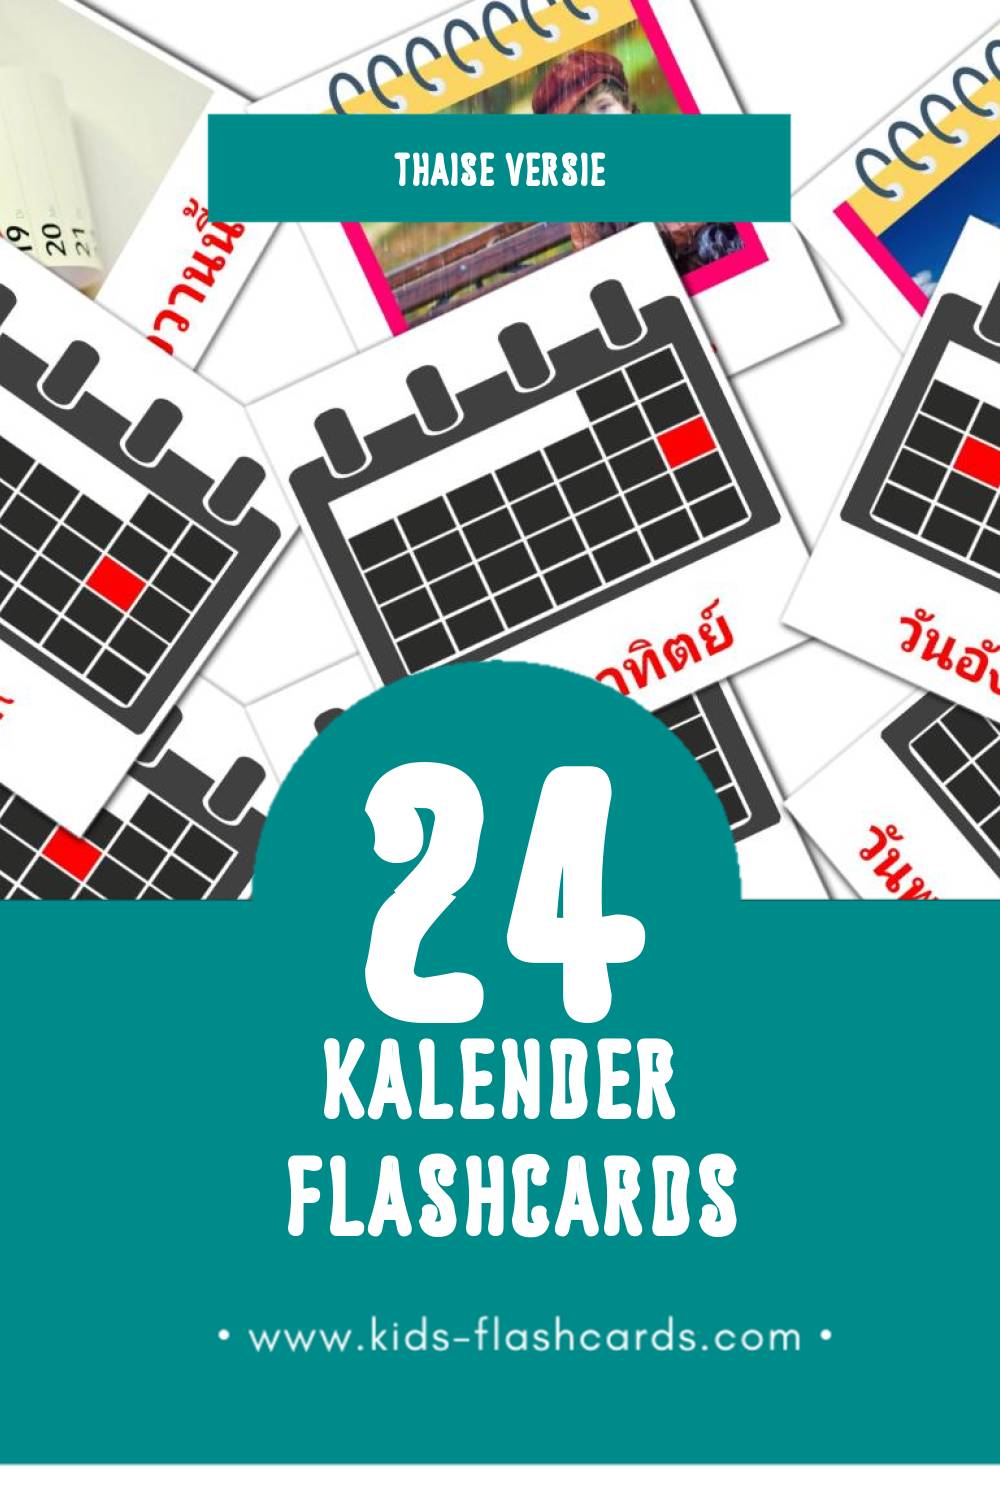 Visuele ปฏิทิน Flashcards voor Kleuters (24 kaarten in het Thais)